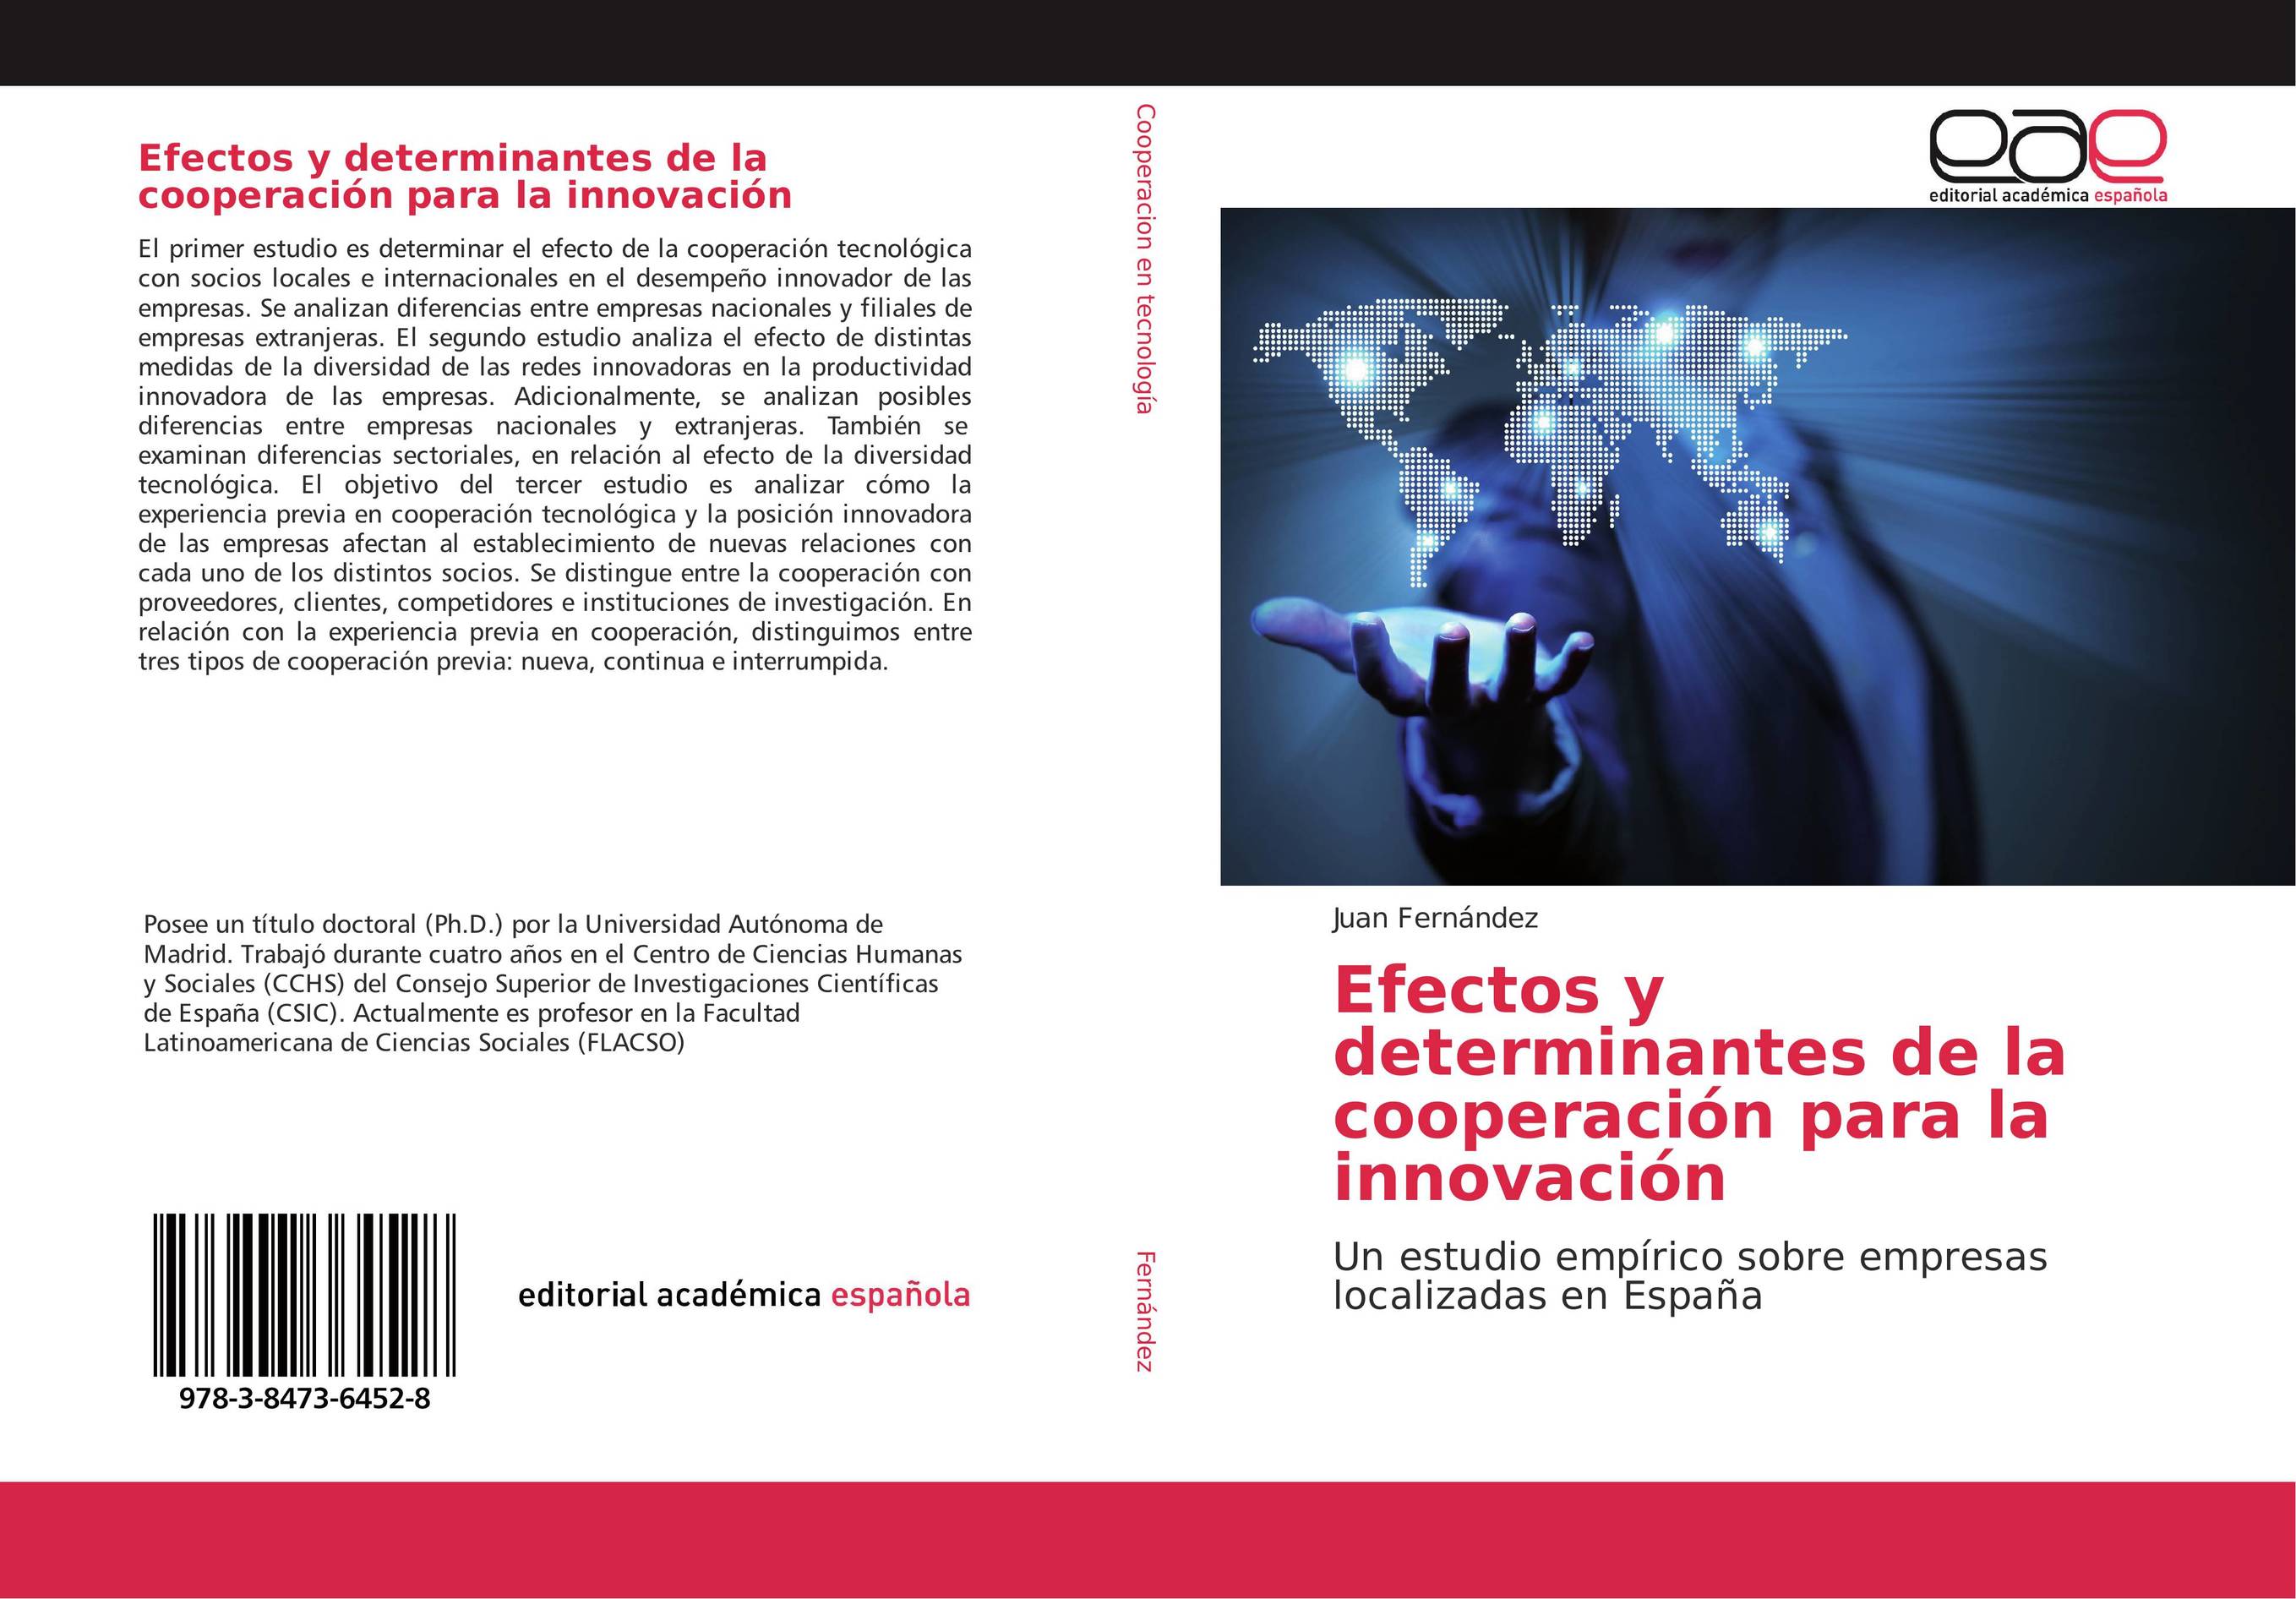 Efectos y determinantes de la cooperación para la innovación